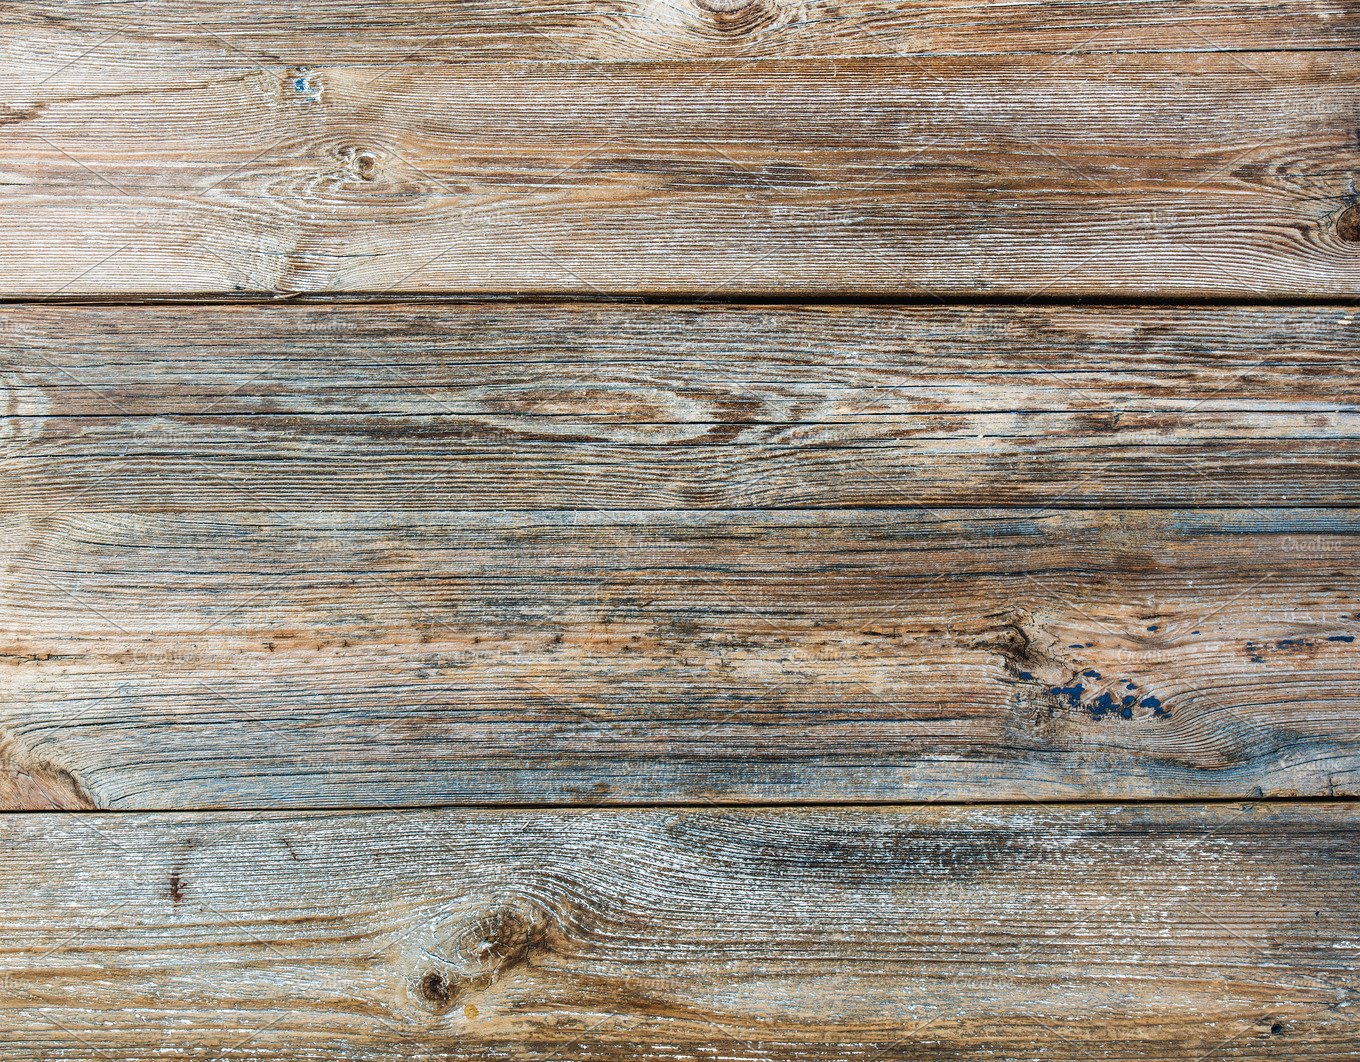 carta da parati rustica,legna,tavola,color legno,pavimento in legno,legno duro